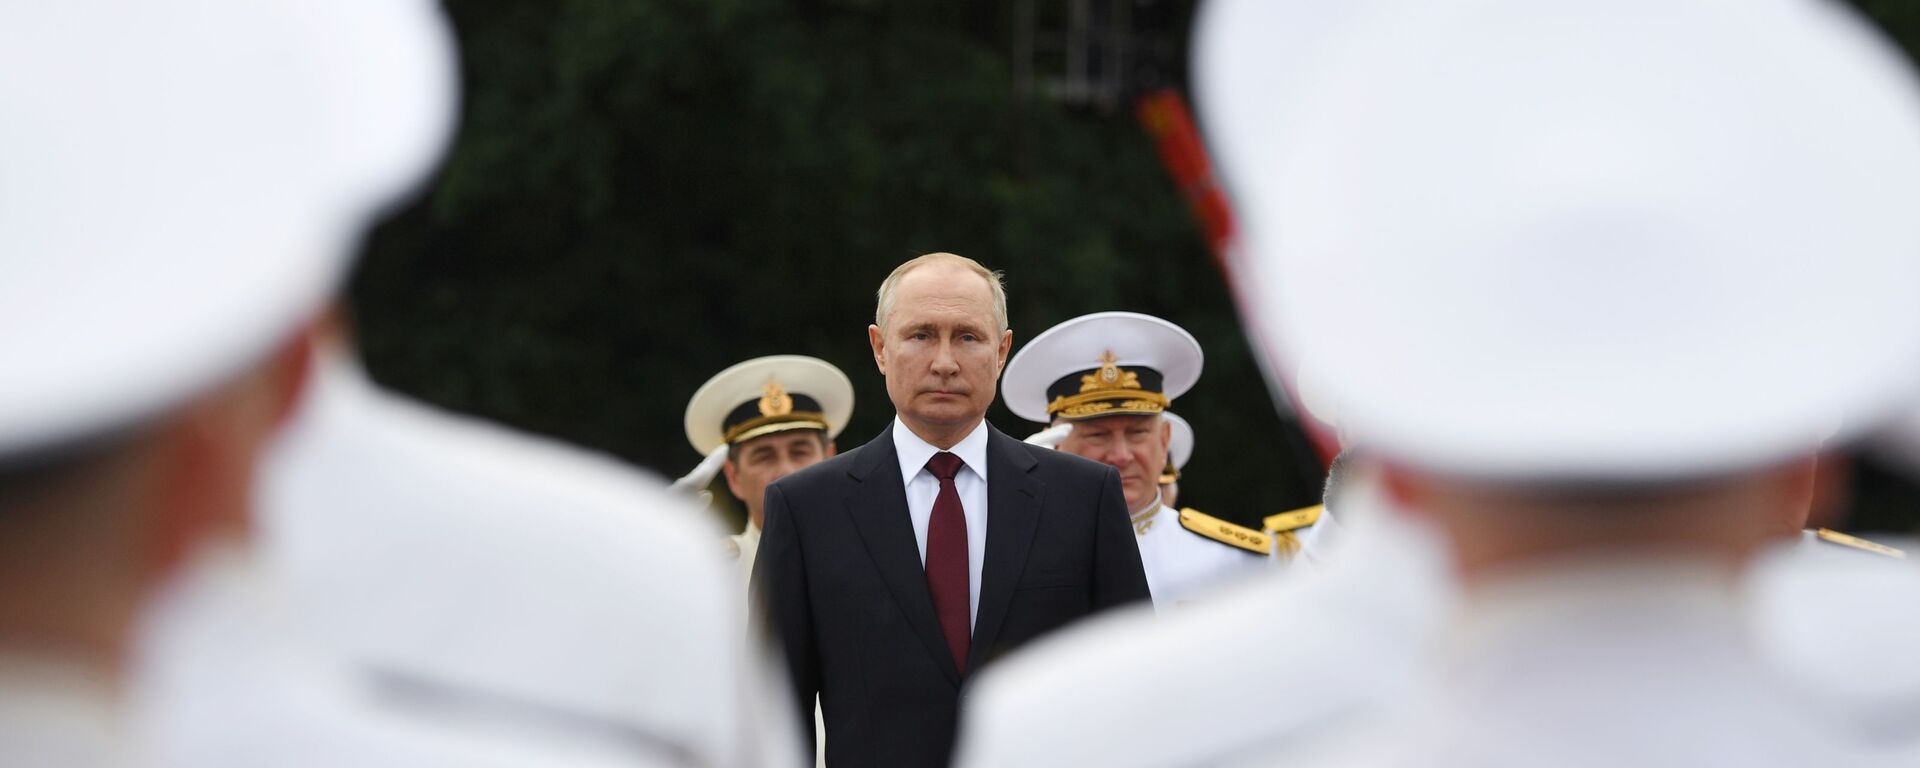 Tổng tư lệnh tối cao Nga Vladimir Putin tại Lễ duyệt binh nhân kỷ niệm Ngày thành lập Hải quân Nga - Sputnik Việt Nam, 1920, 21.11.2021